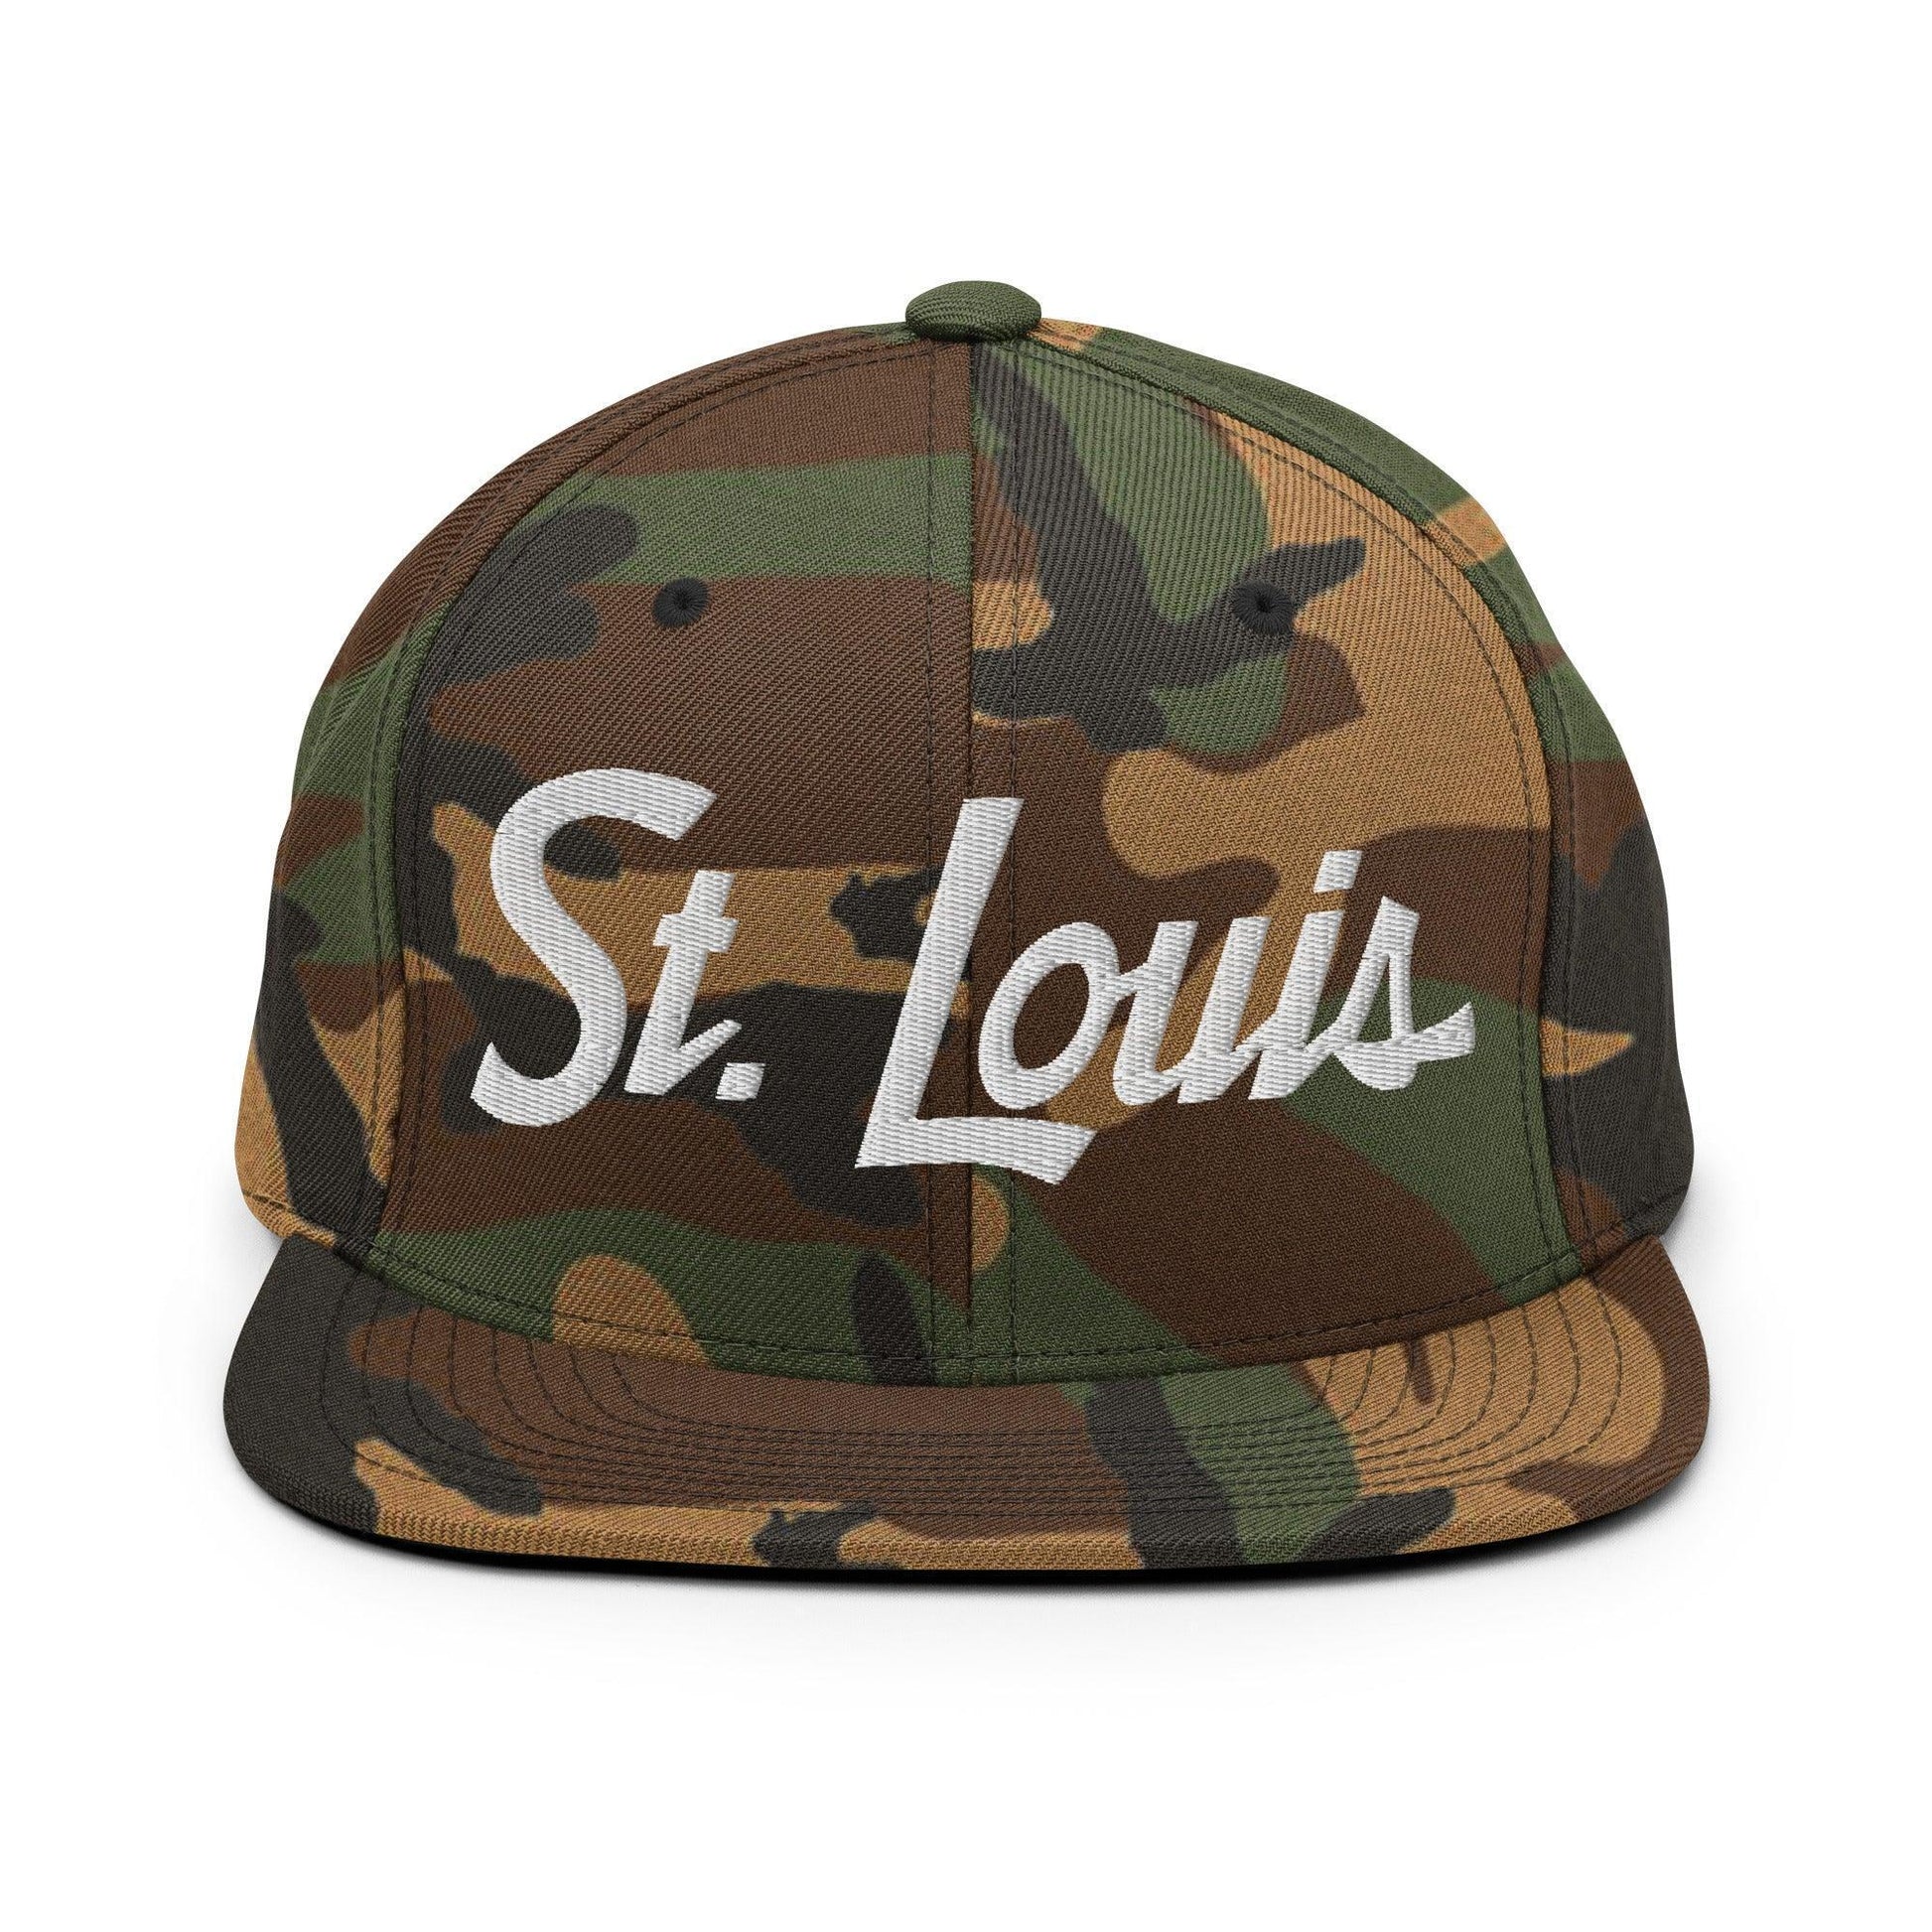 St. Louis Script Snapback Hat Green Camo